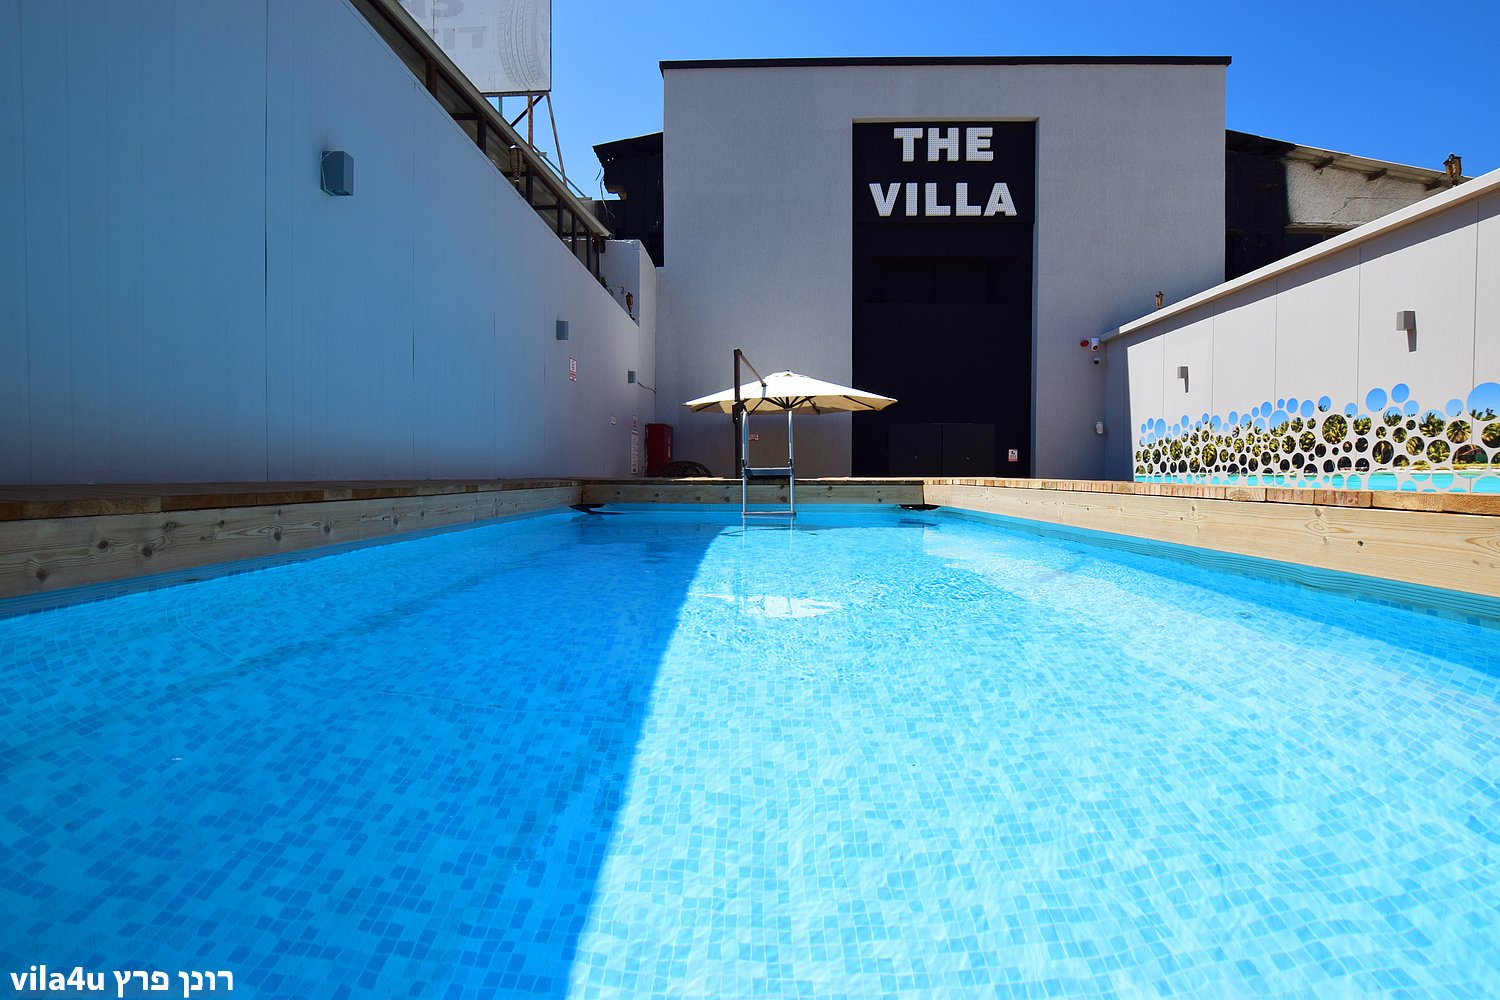 דה וילה - The vila